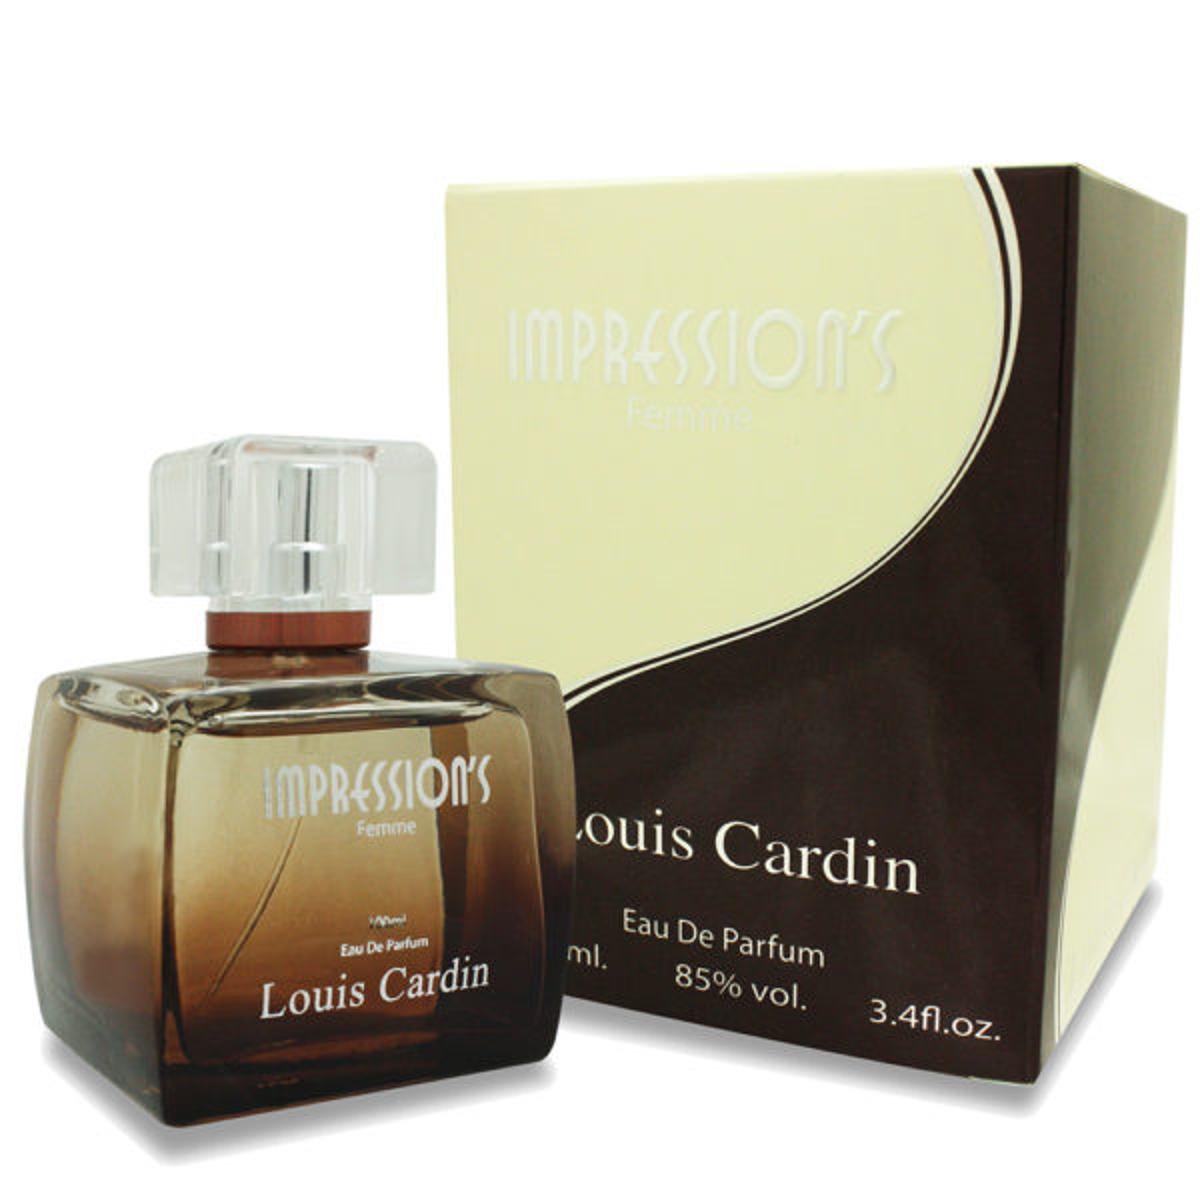 Louis Cardin White Gold 3.4 oz - Cologone for Men & Women